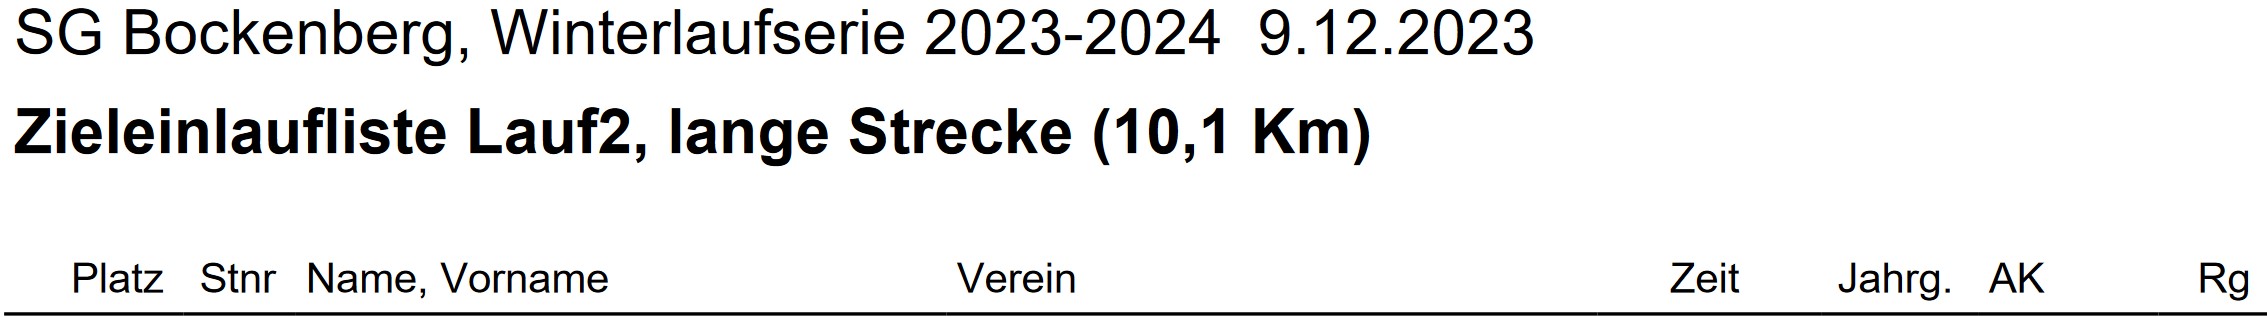 Bockenberg 2023 2024 2. Lauf Ergebnisse Teil 1